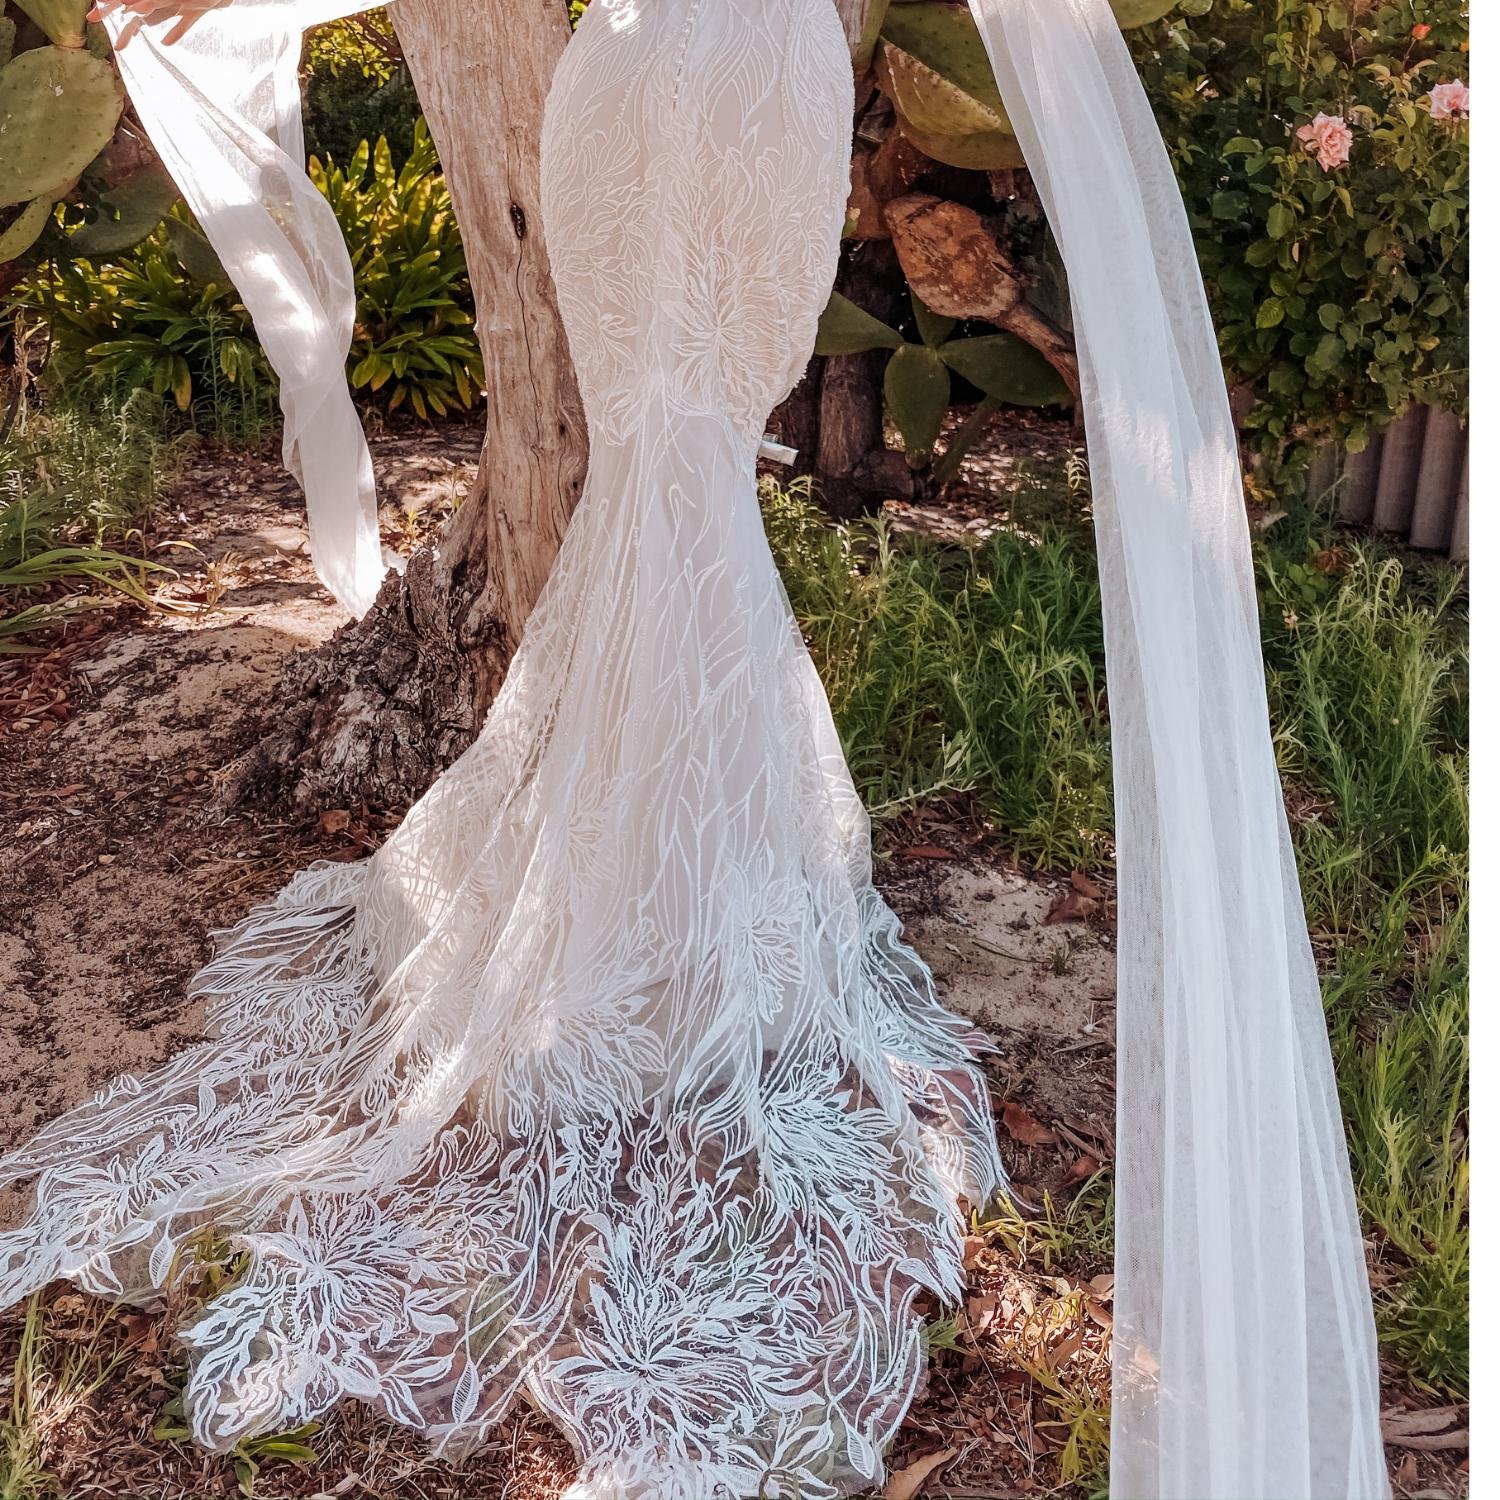 Forrest wedding dress by Rachel Rose Bridal 